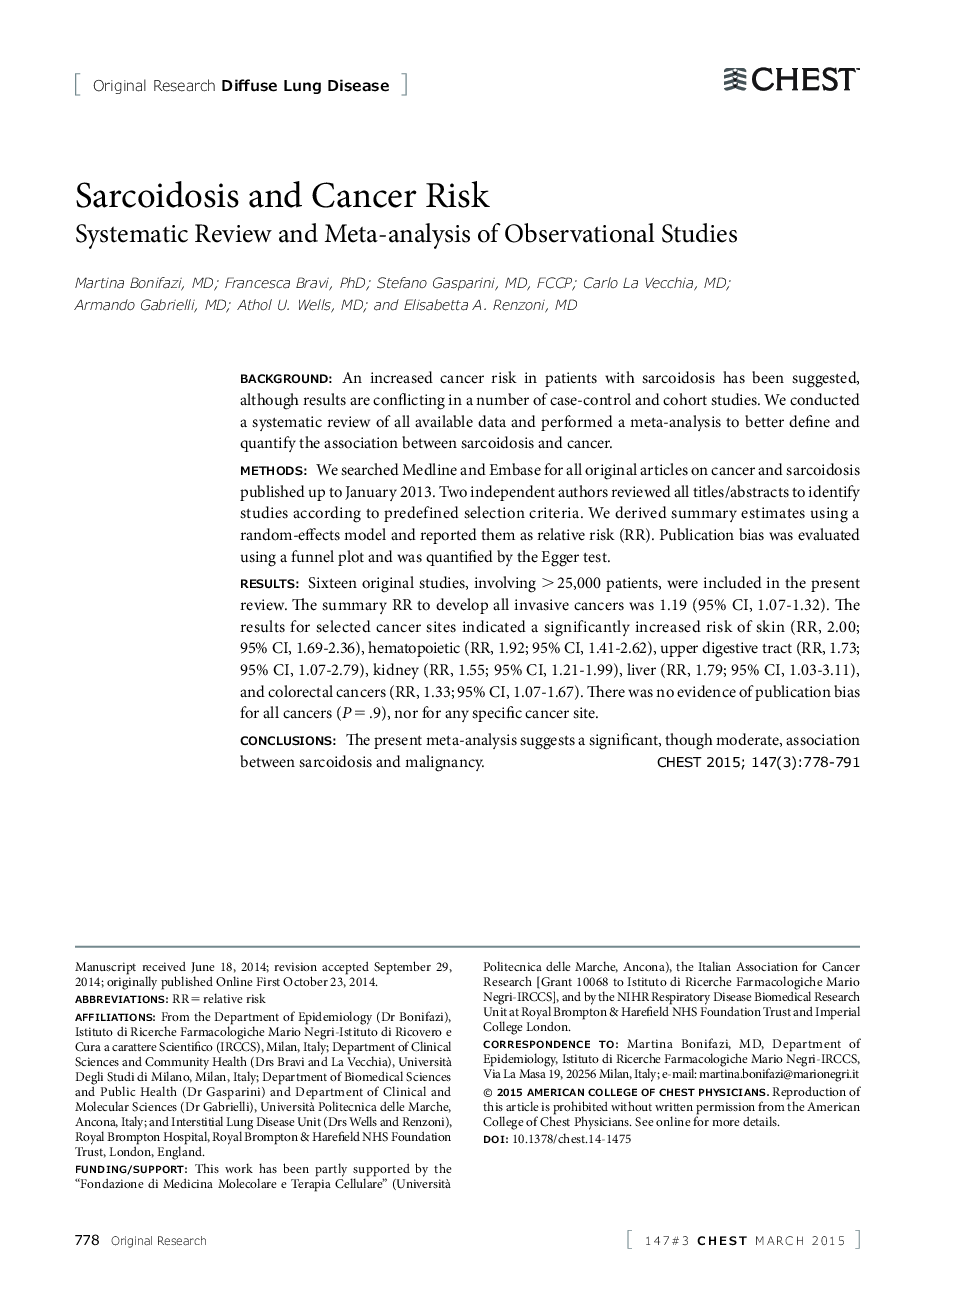 سارکوئیدوز و خطر سرطان: بررسی سیستماتیک و متا آنالیز مطالعات مشاهده شده 